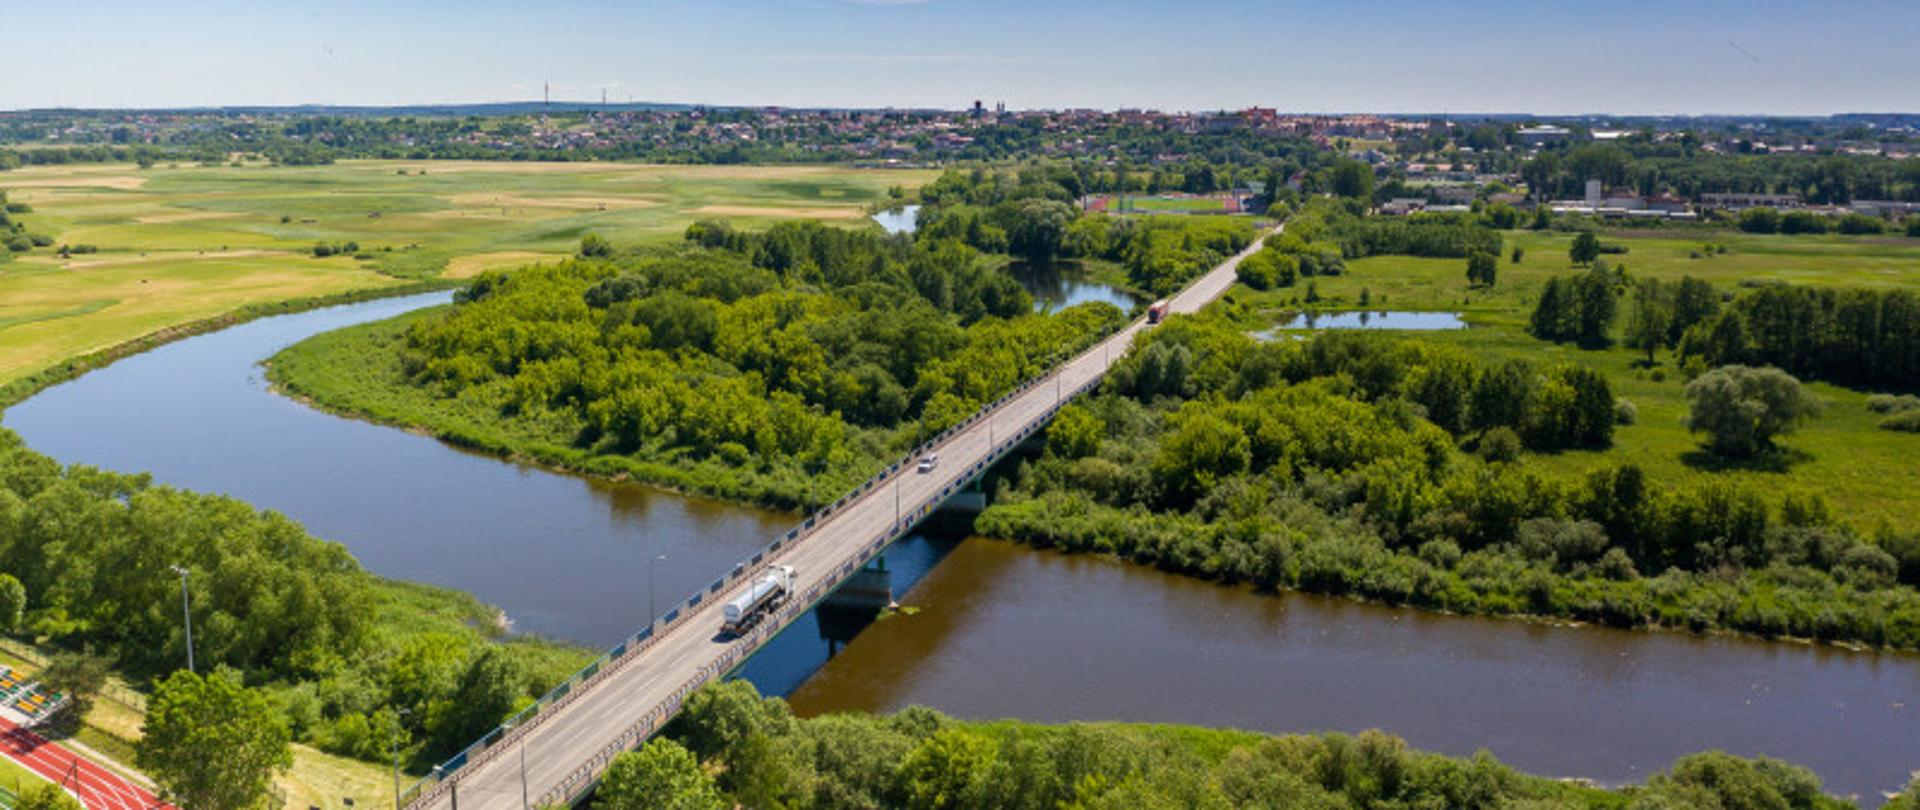 Zdjęcie przedstawia most nad rzeką, po którym jadą pojazdy. W tle drzewa, pola, a na dalszym planie widoczne zabudowania mieszkalne.